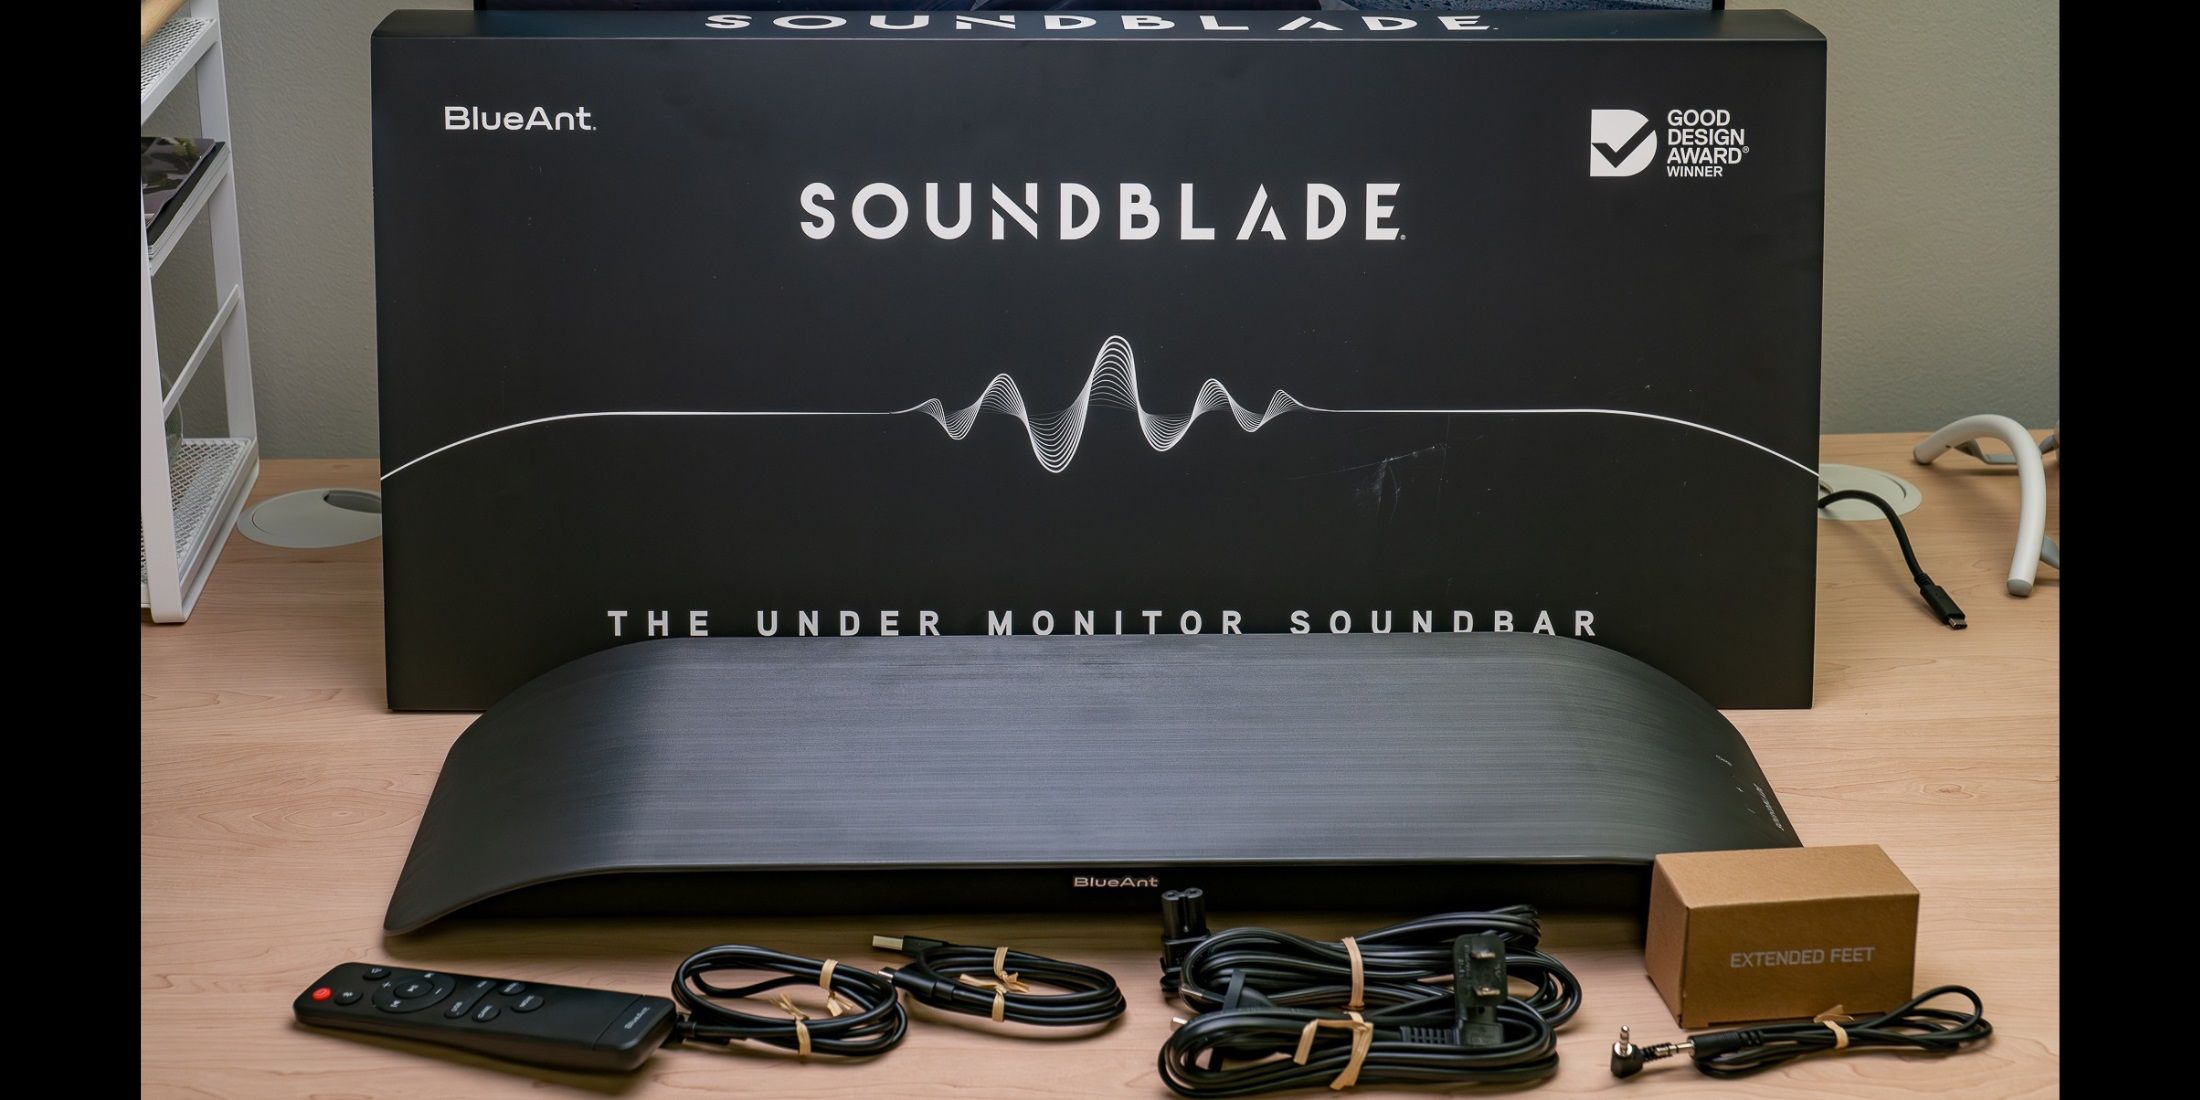 BlueAnt Soundblade Soundbar